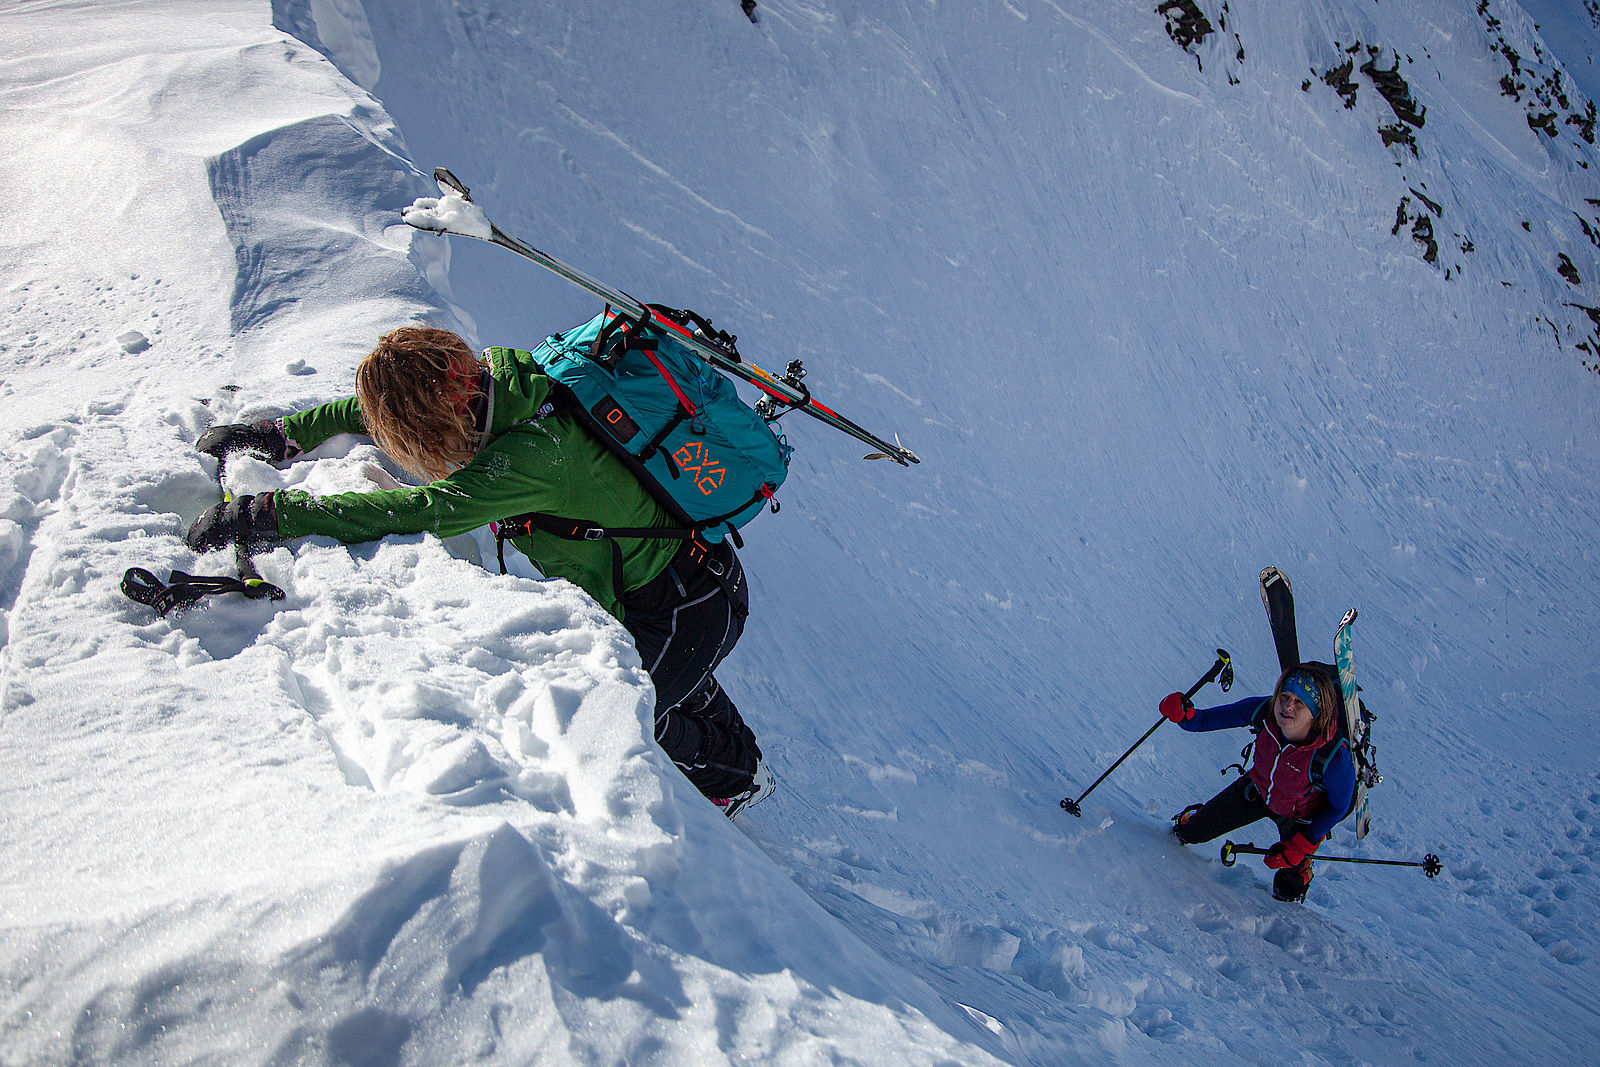 Bei alpin anspruchsvolleren Touren muss man auch mal ohne Ski stapfen, dann ist ein guter Beinabschluss wichtig, damit kein Schnee in die Schuhe fällt